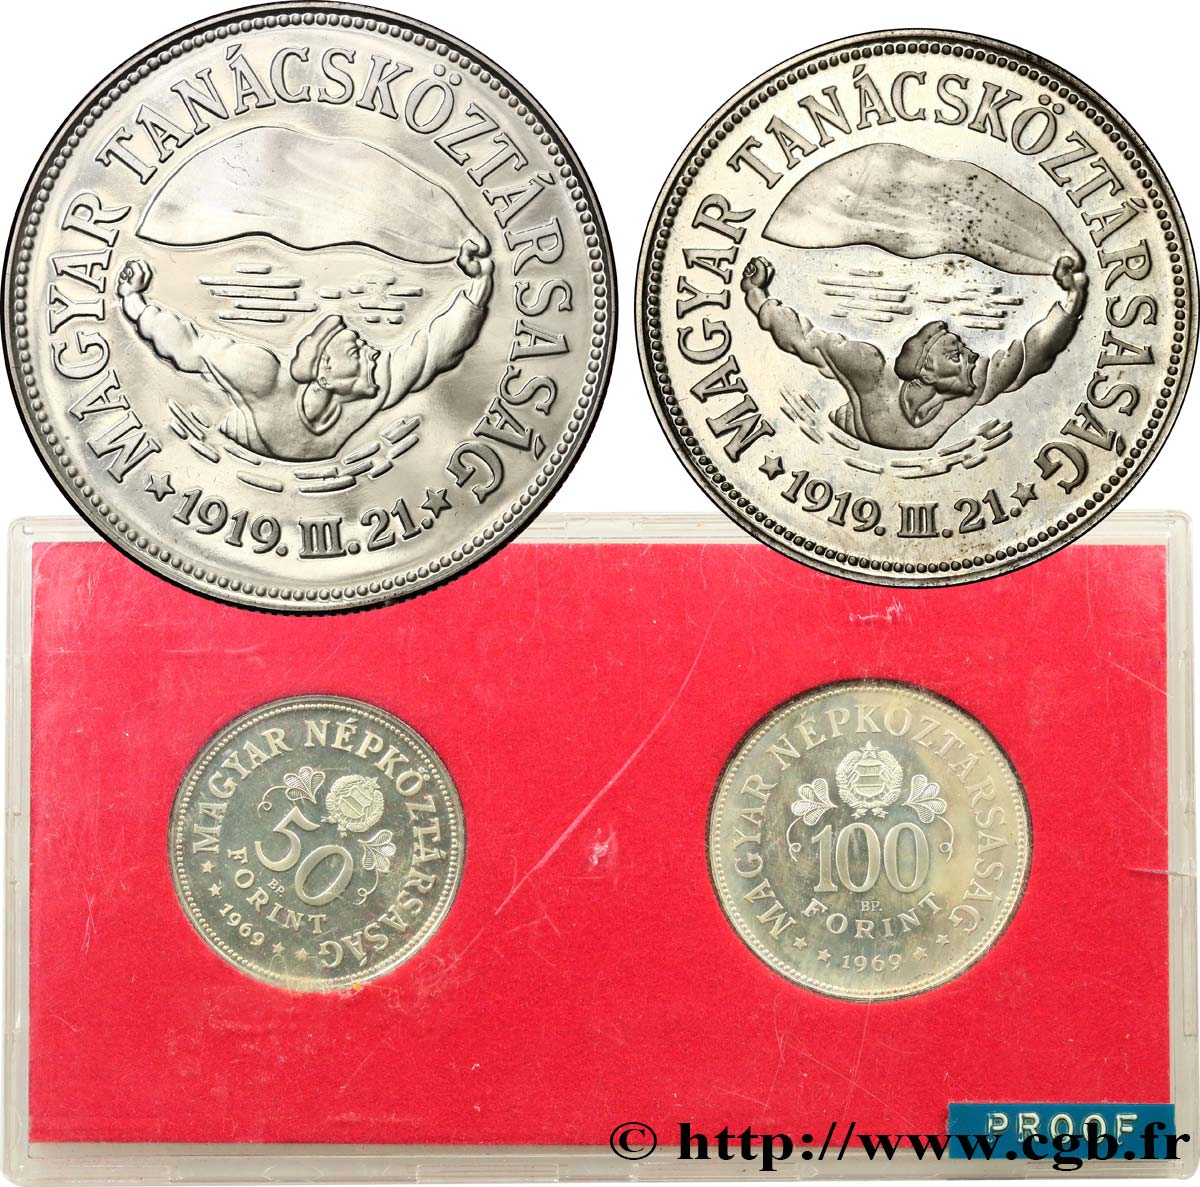 HUNGARY Série Proof - 2 monnaies - 50e anniversaire des soviets du 31 mars 1919 1969 Budapest Proof set 